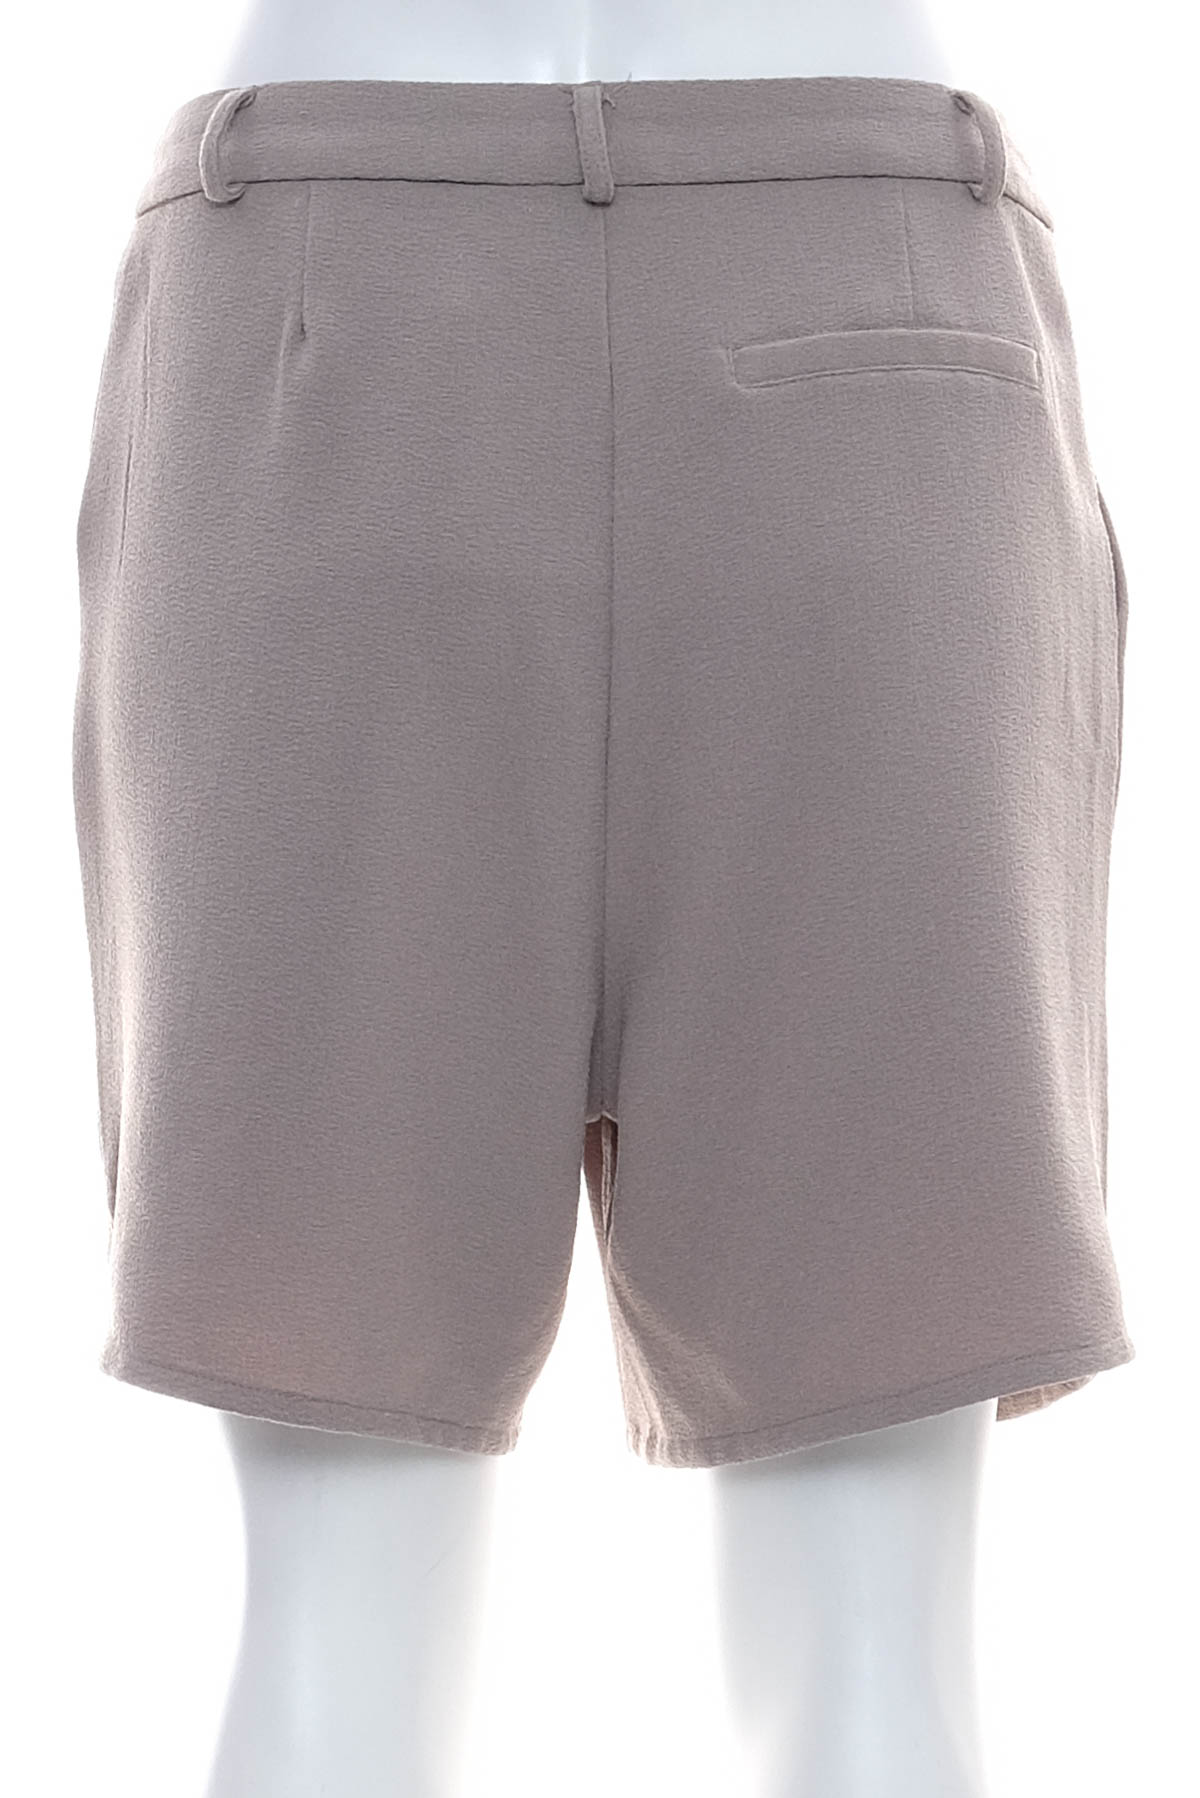 Female shorts - OBJECT - 1